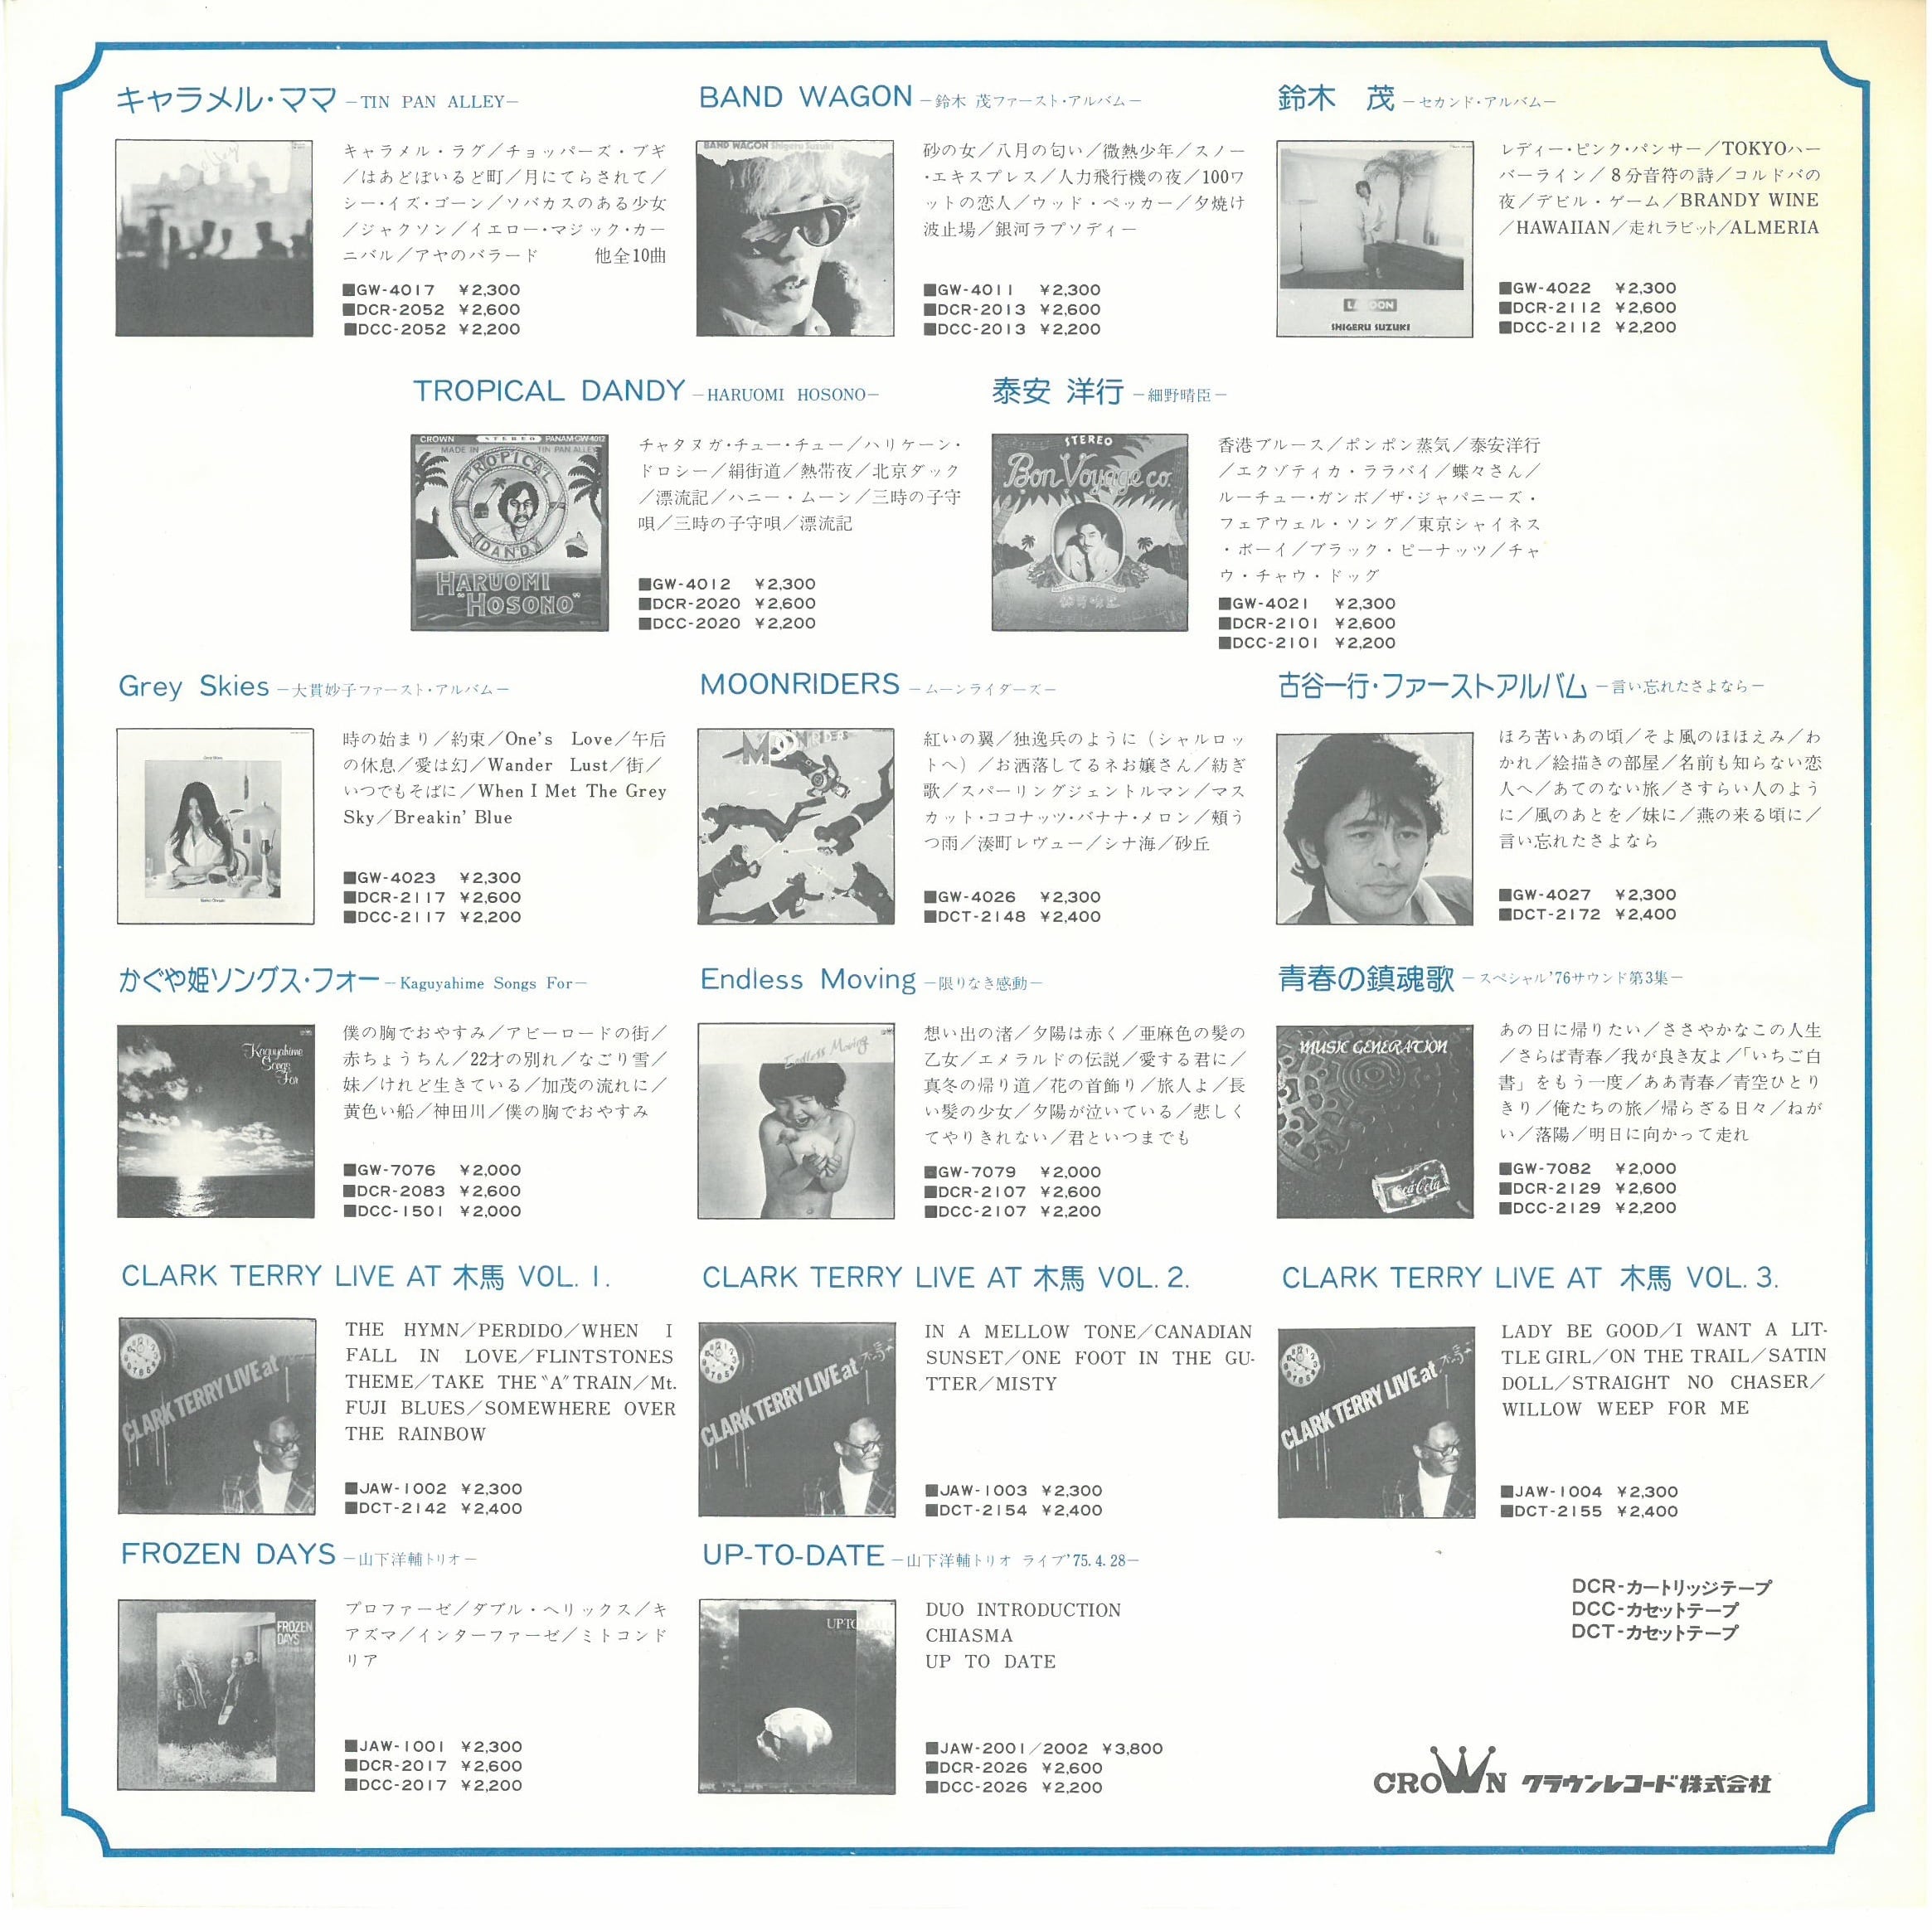 新製品情報も満載 GW-4028 イルカ 植物誌 LP レコード